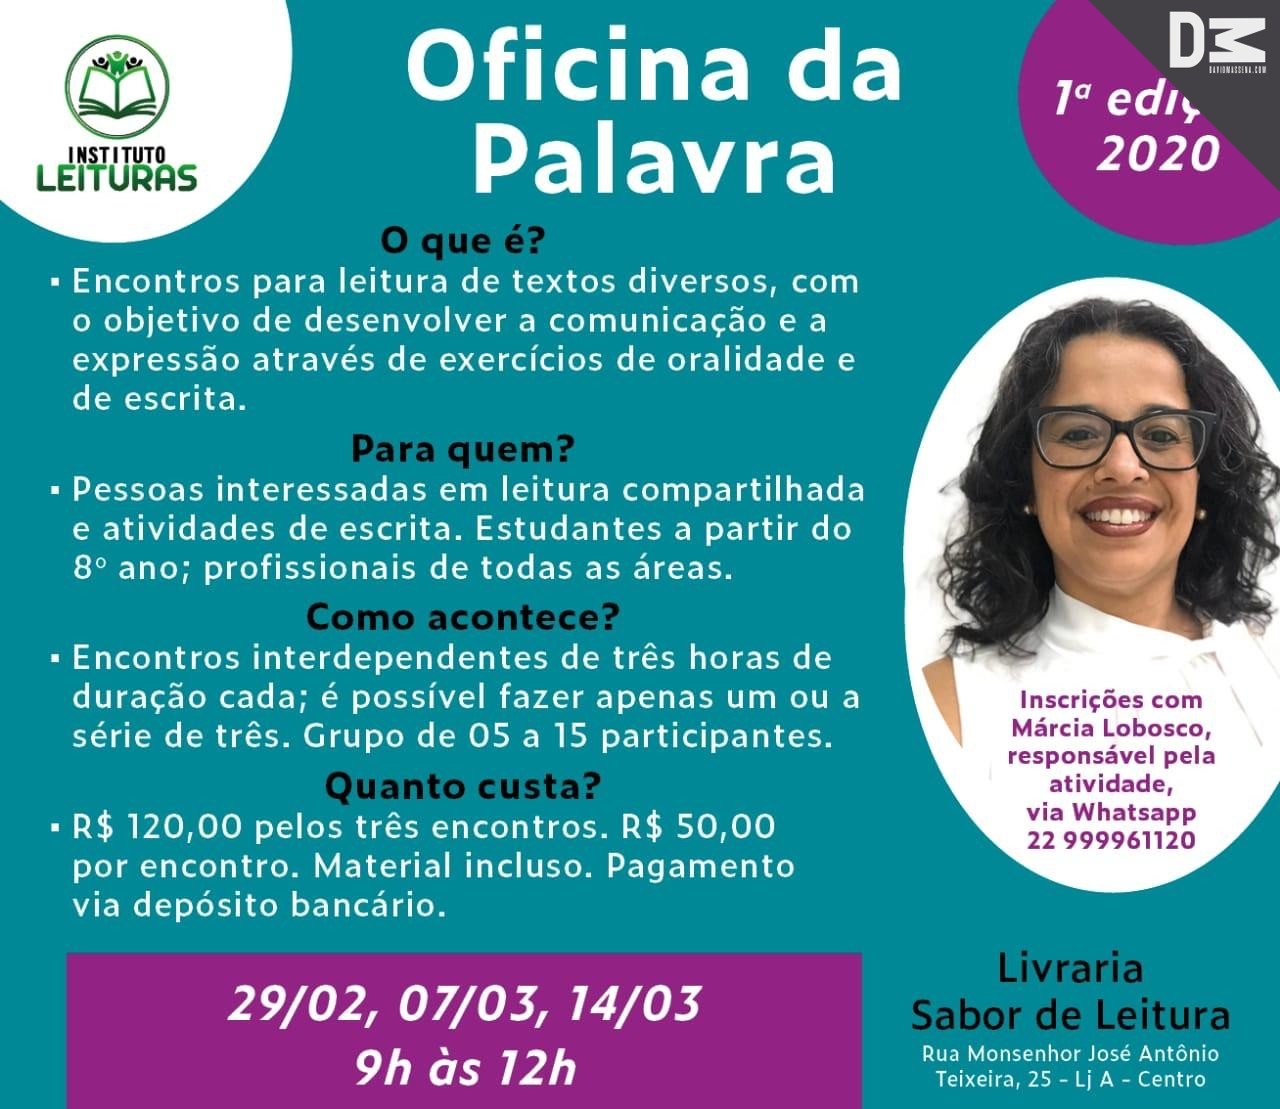 Márcia Lobosco lança o ” Instituto Leituras”